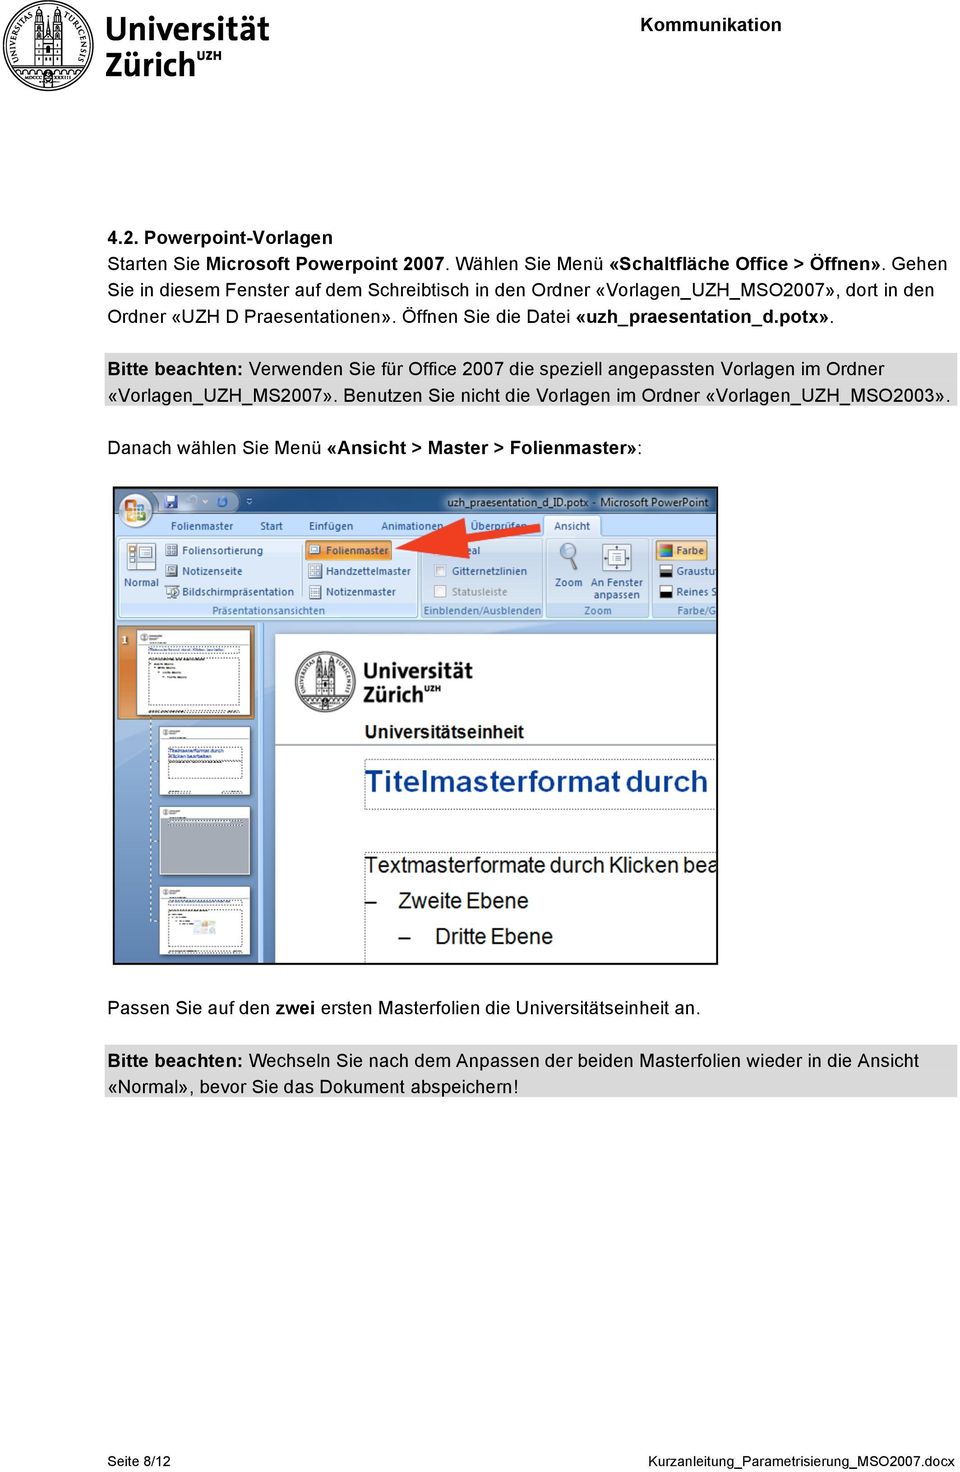 Bitte beachten: Verwenden Sie für Office 2007 die speziell angepassten Vorlagen im Ordner «Vorlagen_UZH_MS2007». Benutzen Sie nicht die Vorlagen im Ordner «Vorlagen_UZH_MSO2003».